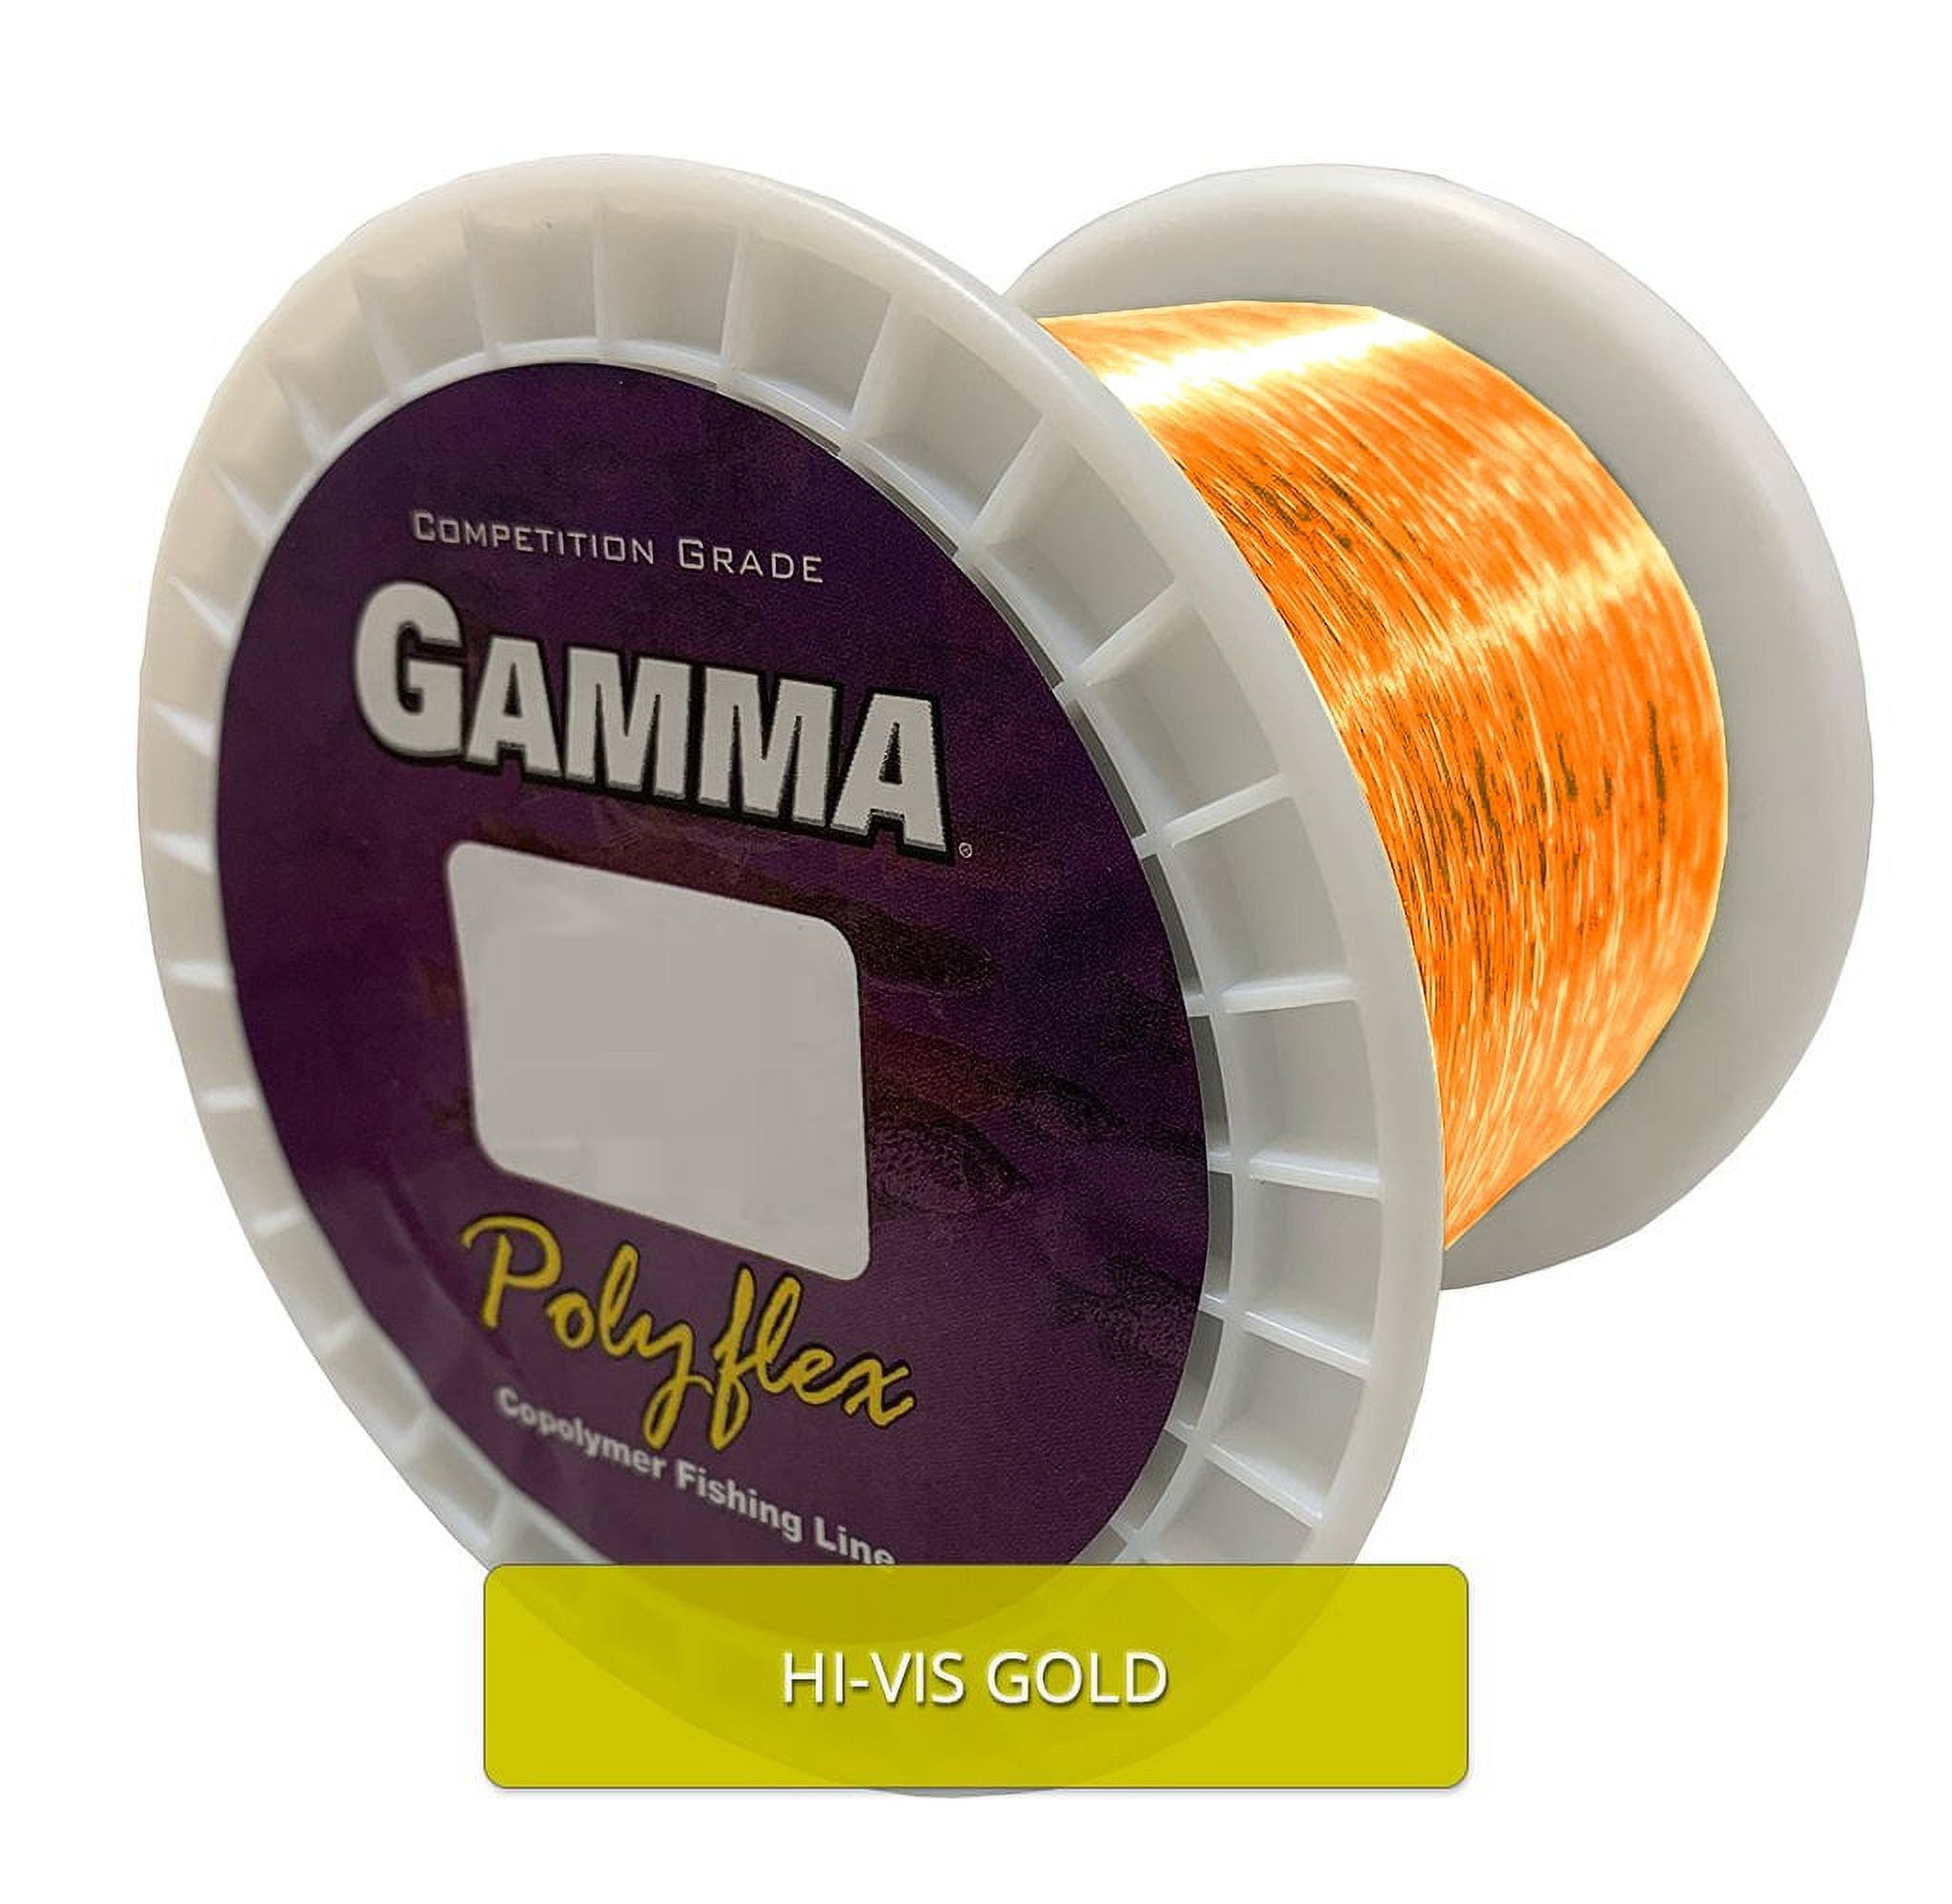 GAMMA Polyflex Copolymer Fishing Line Bulk Spool, Hi-Vis Gold, 4lb, 3300yd